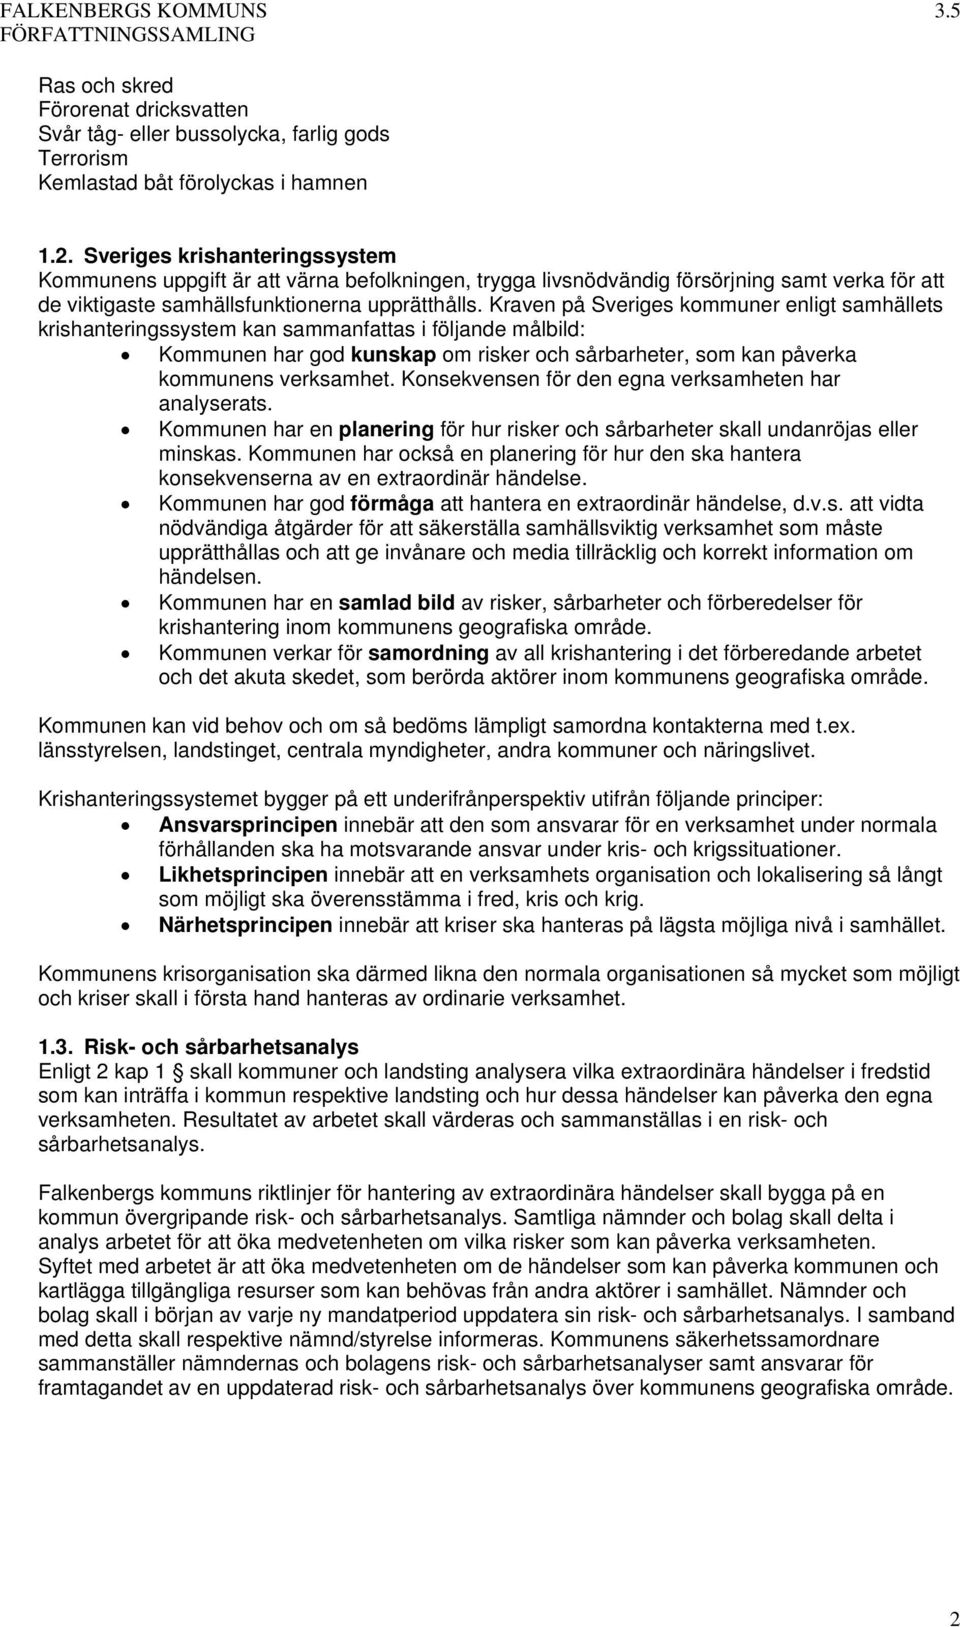 Kraven på Sveriges kommuner enligt samhällets krishanteringssystem kan sammanfattas i följande målbild: Kommunen har god kunskap om risker och sårbarheter, som kan påverka kommunens verksamhet.